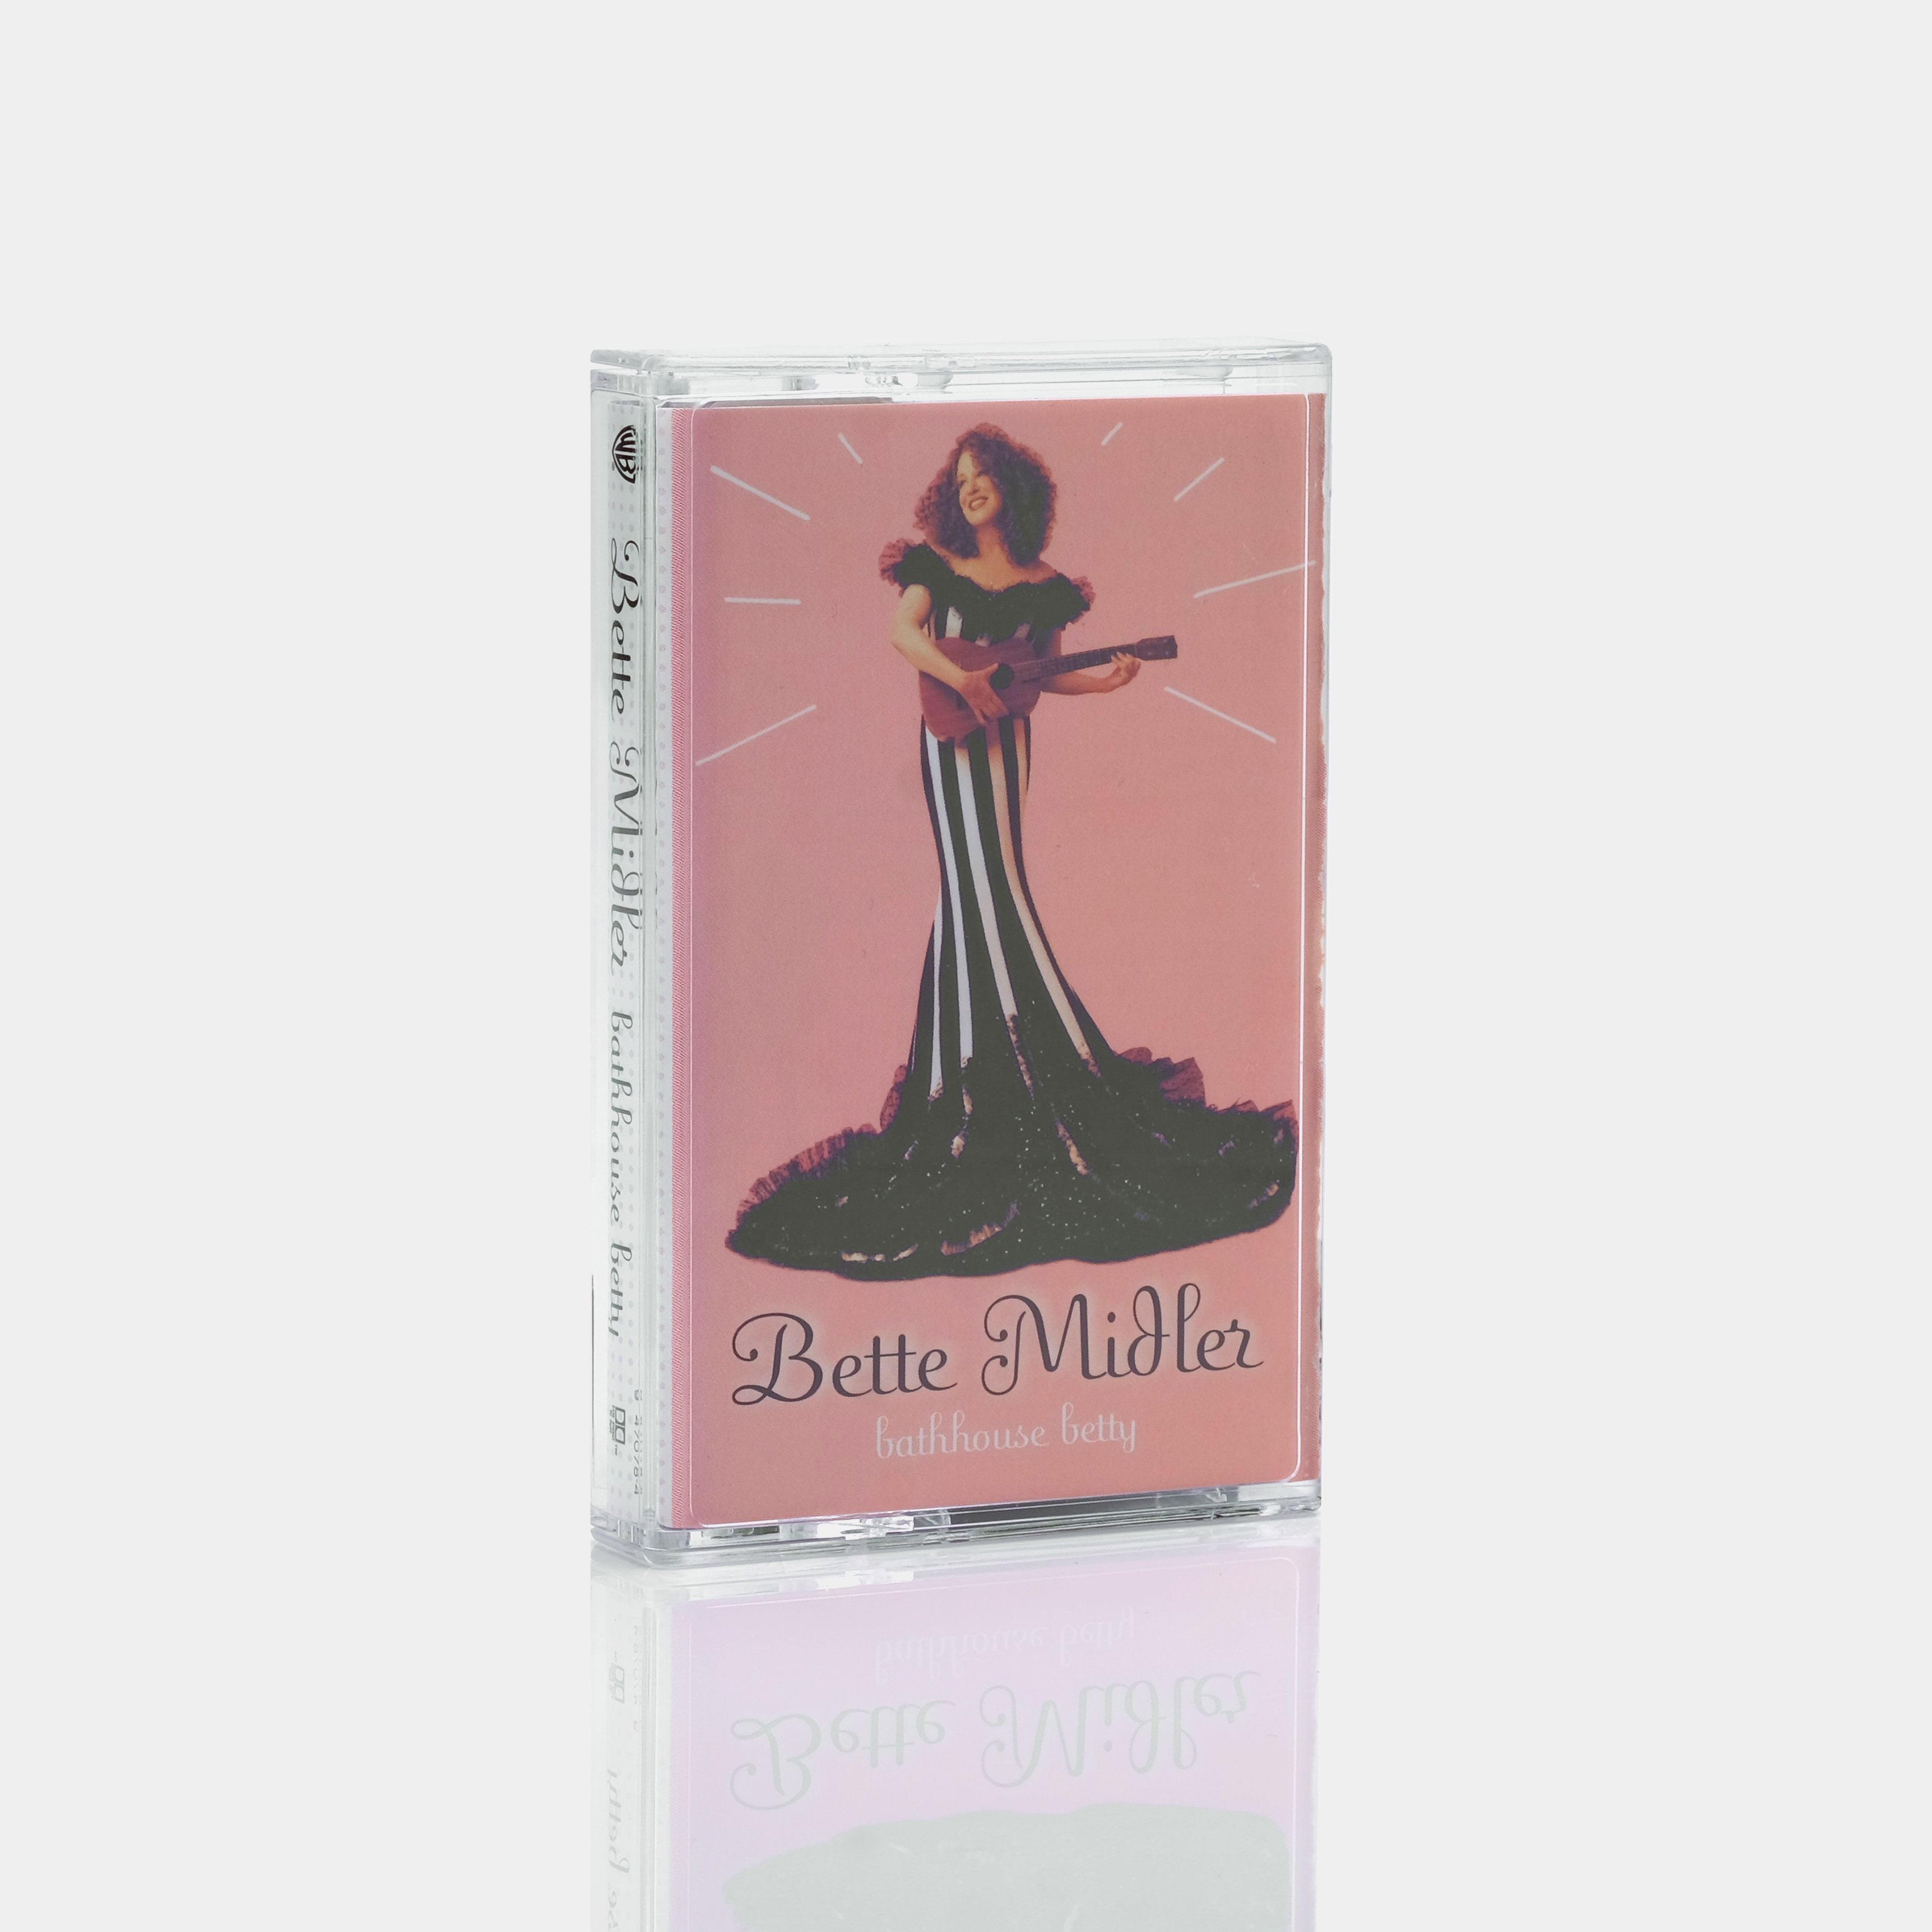 Bette Midler - Bathhouse Betty Cassette Tape